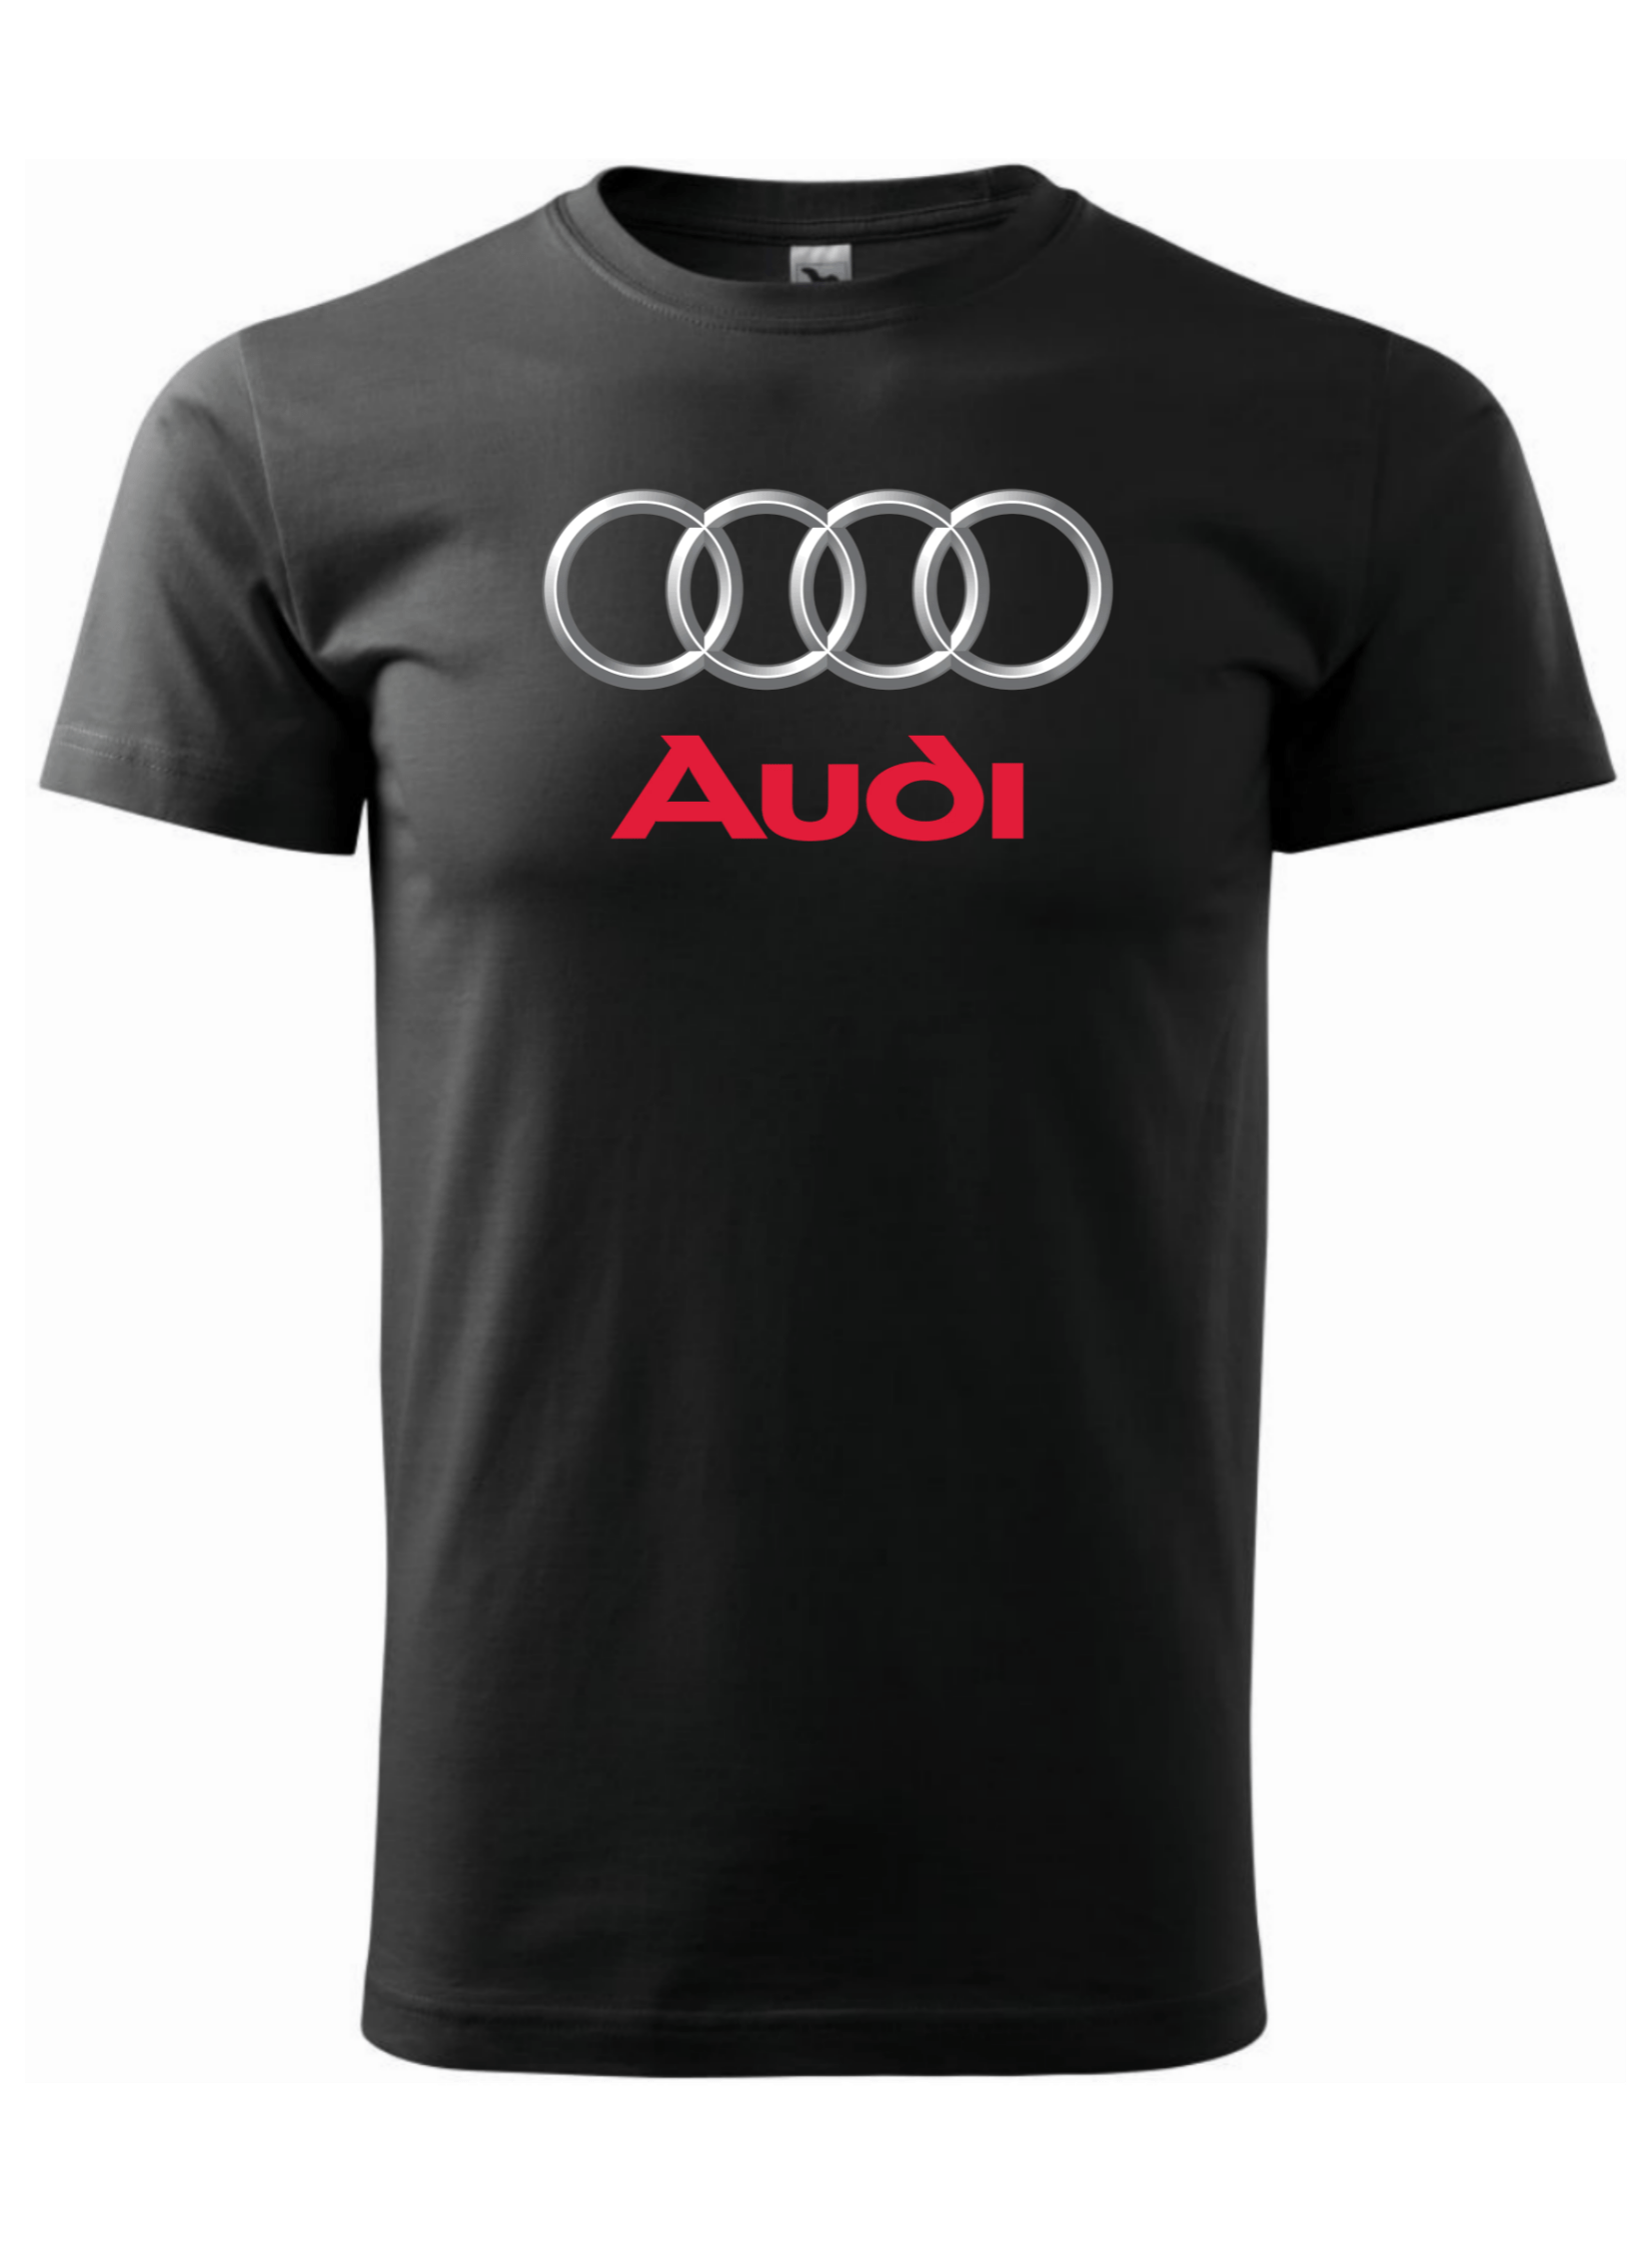 Pánské tričko s potiskem značky Audi 2